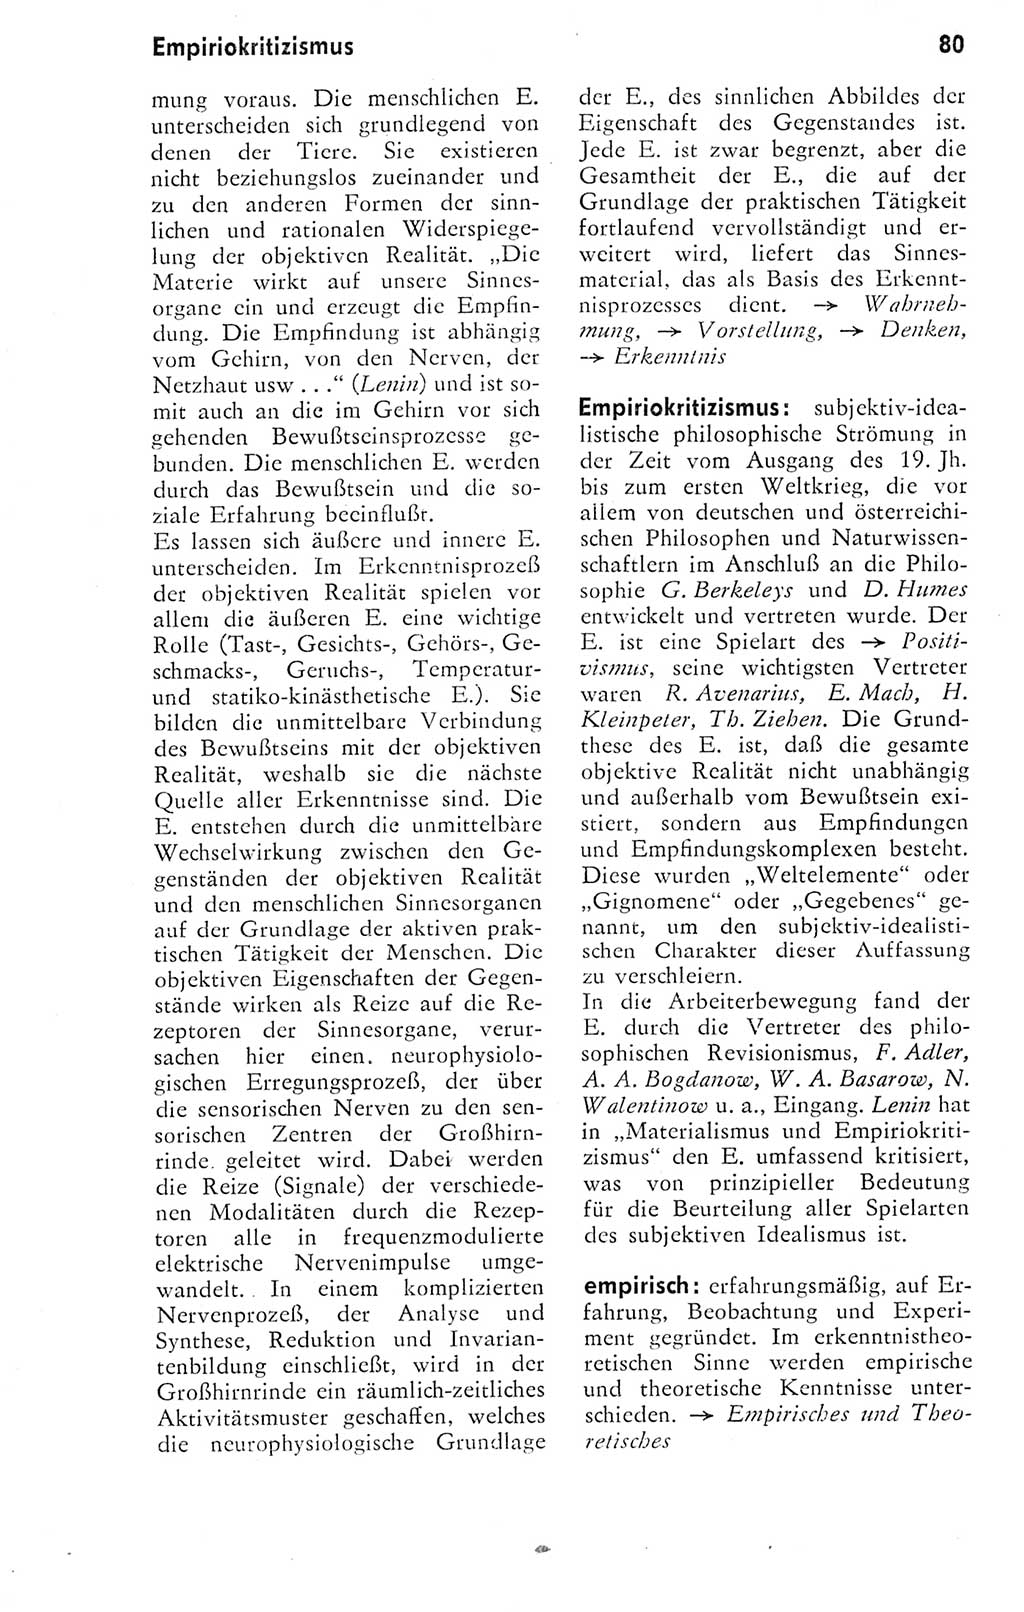 Kleines Wörterbuch der marxistisch-leninistischen Philosophie [Deutsche Demokratische Republik (DDR)] 1974, Seite 80 (Kl. Wb. ML Phil. DDR 1974, S. 80)